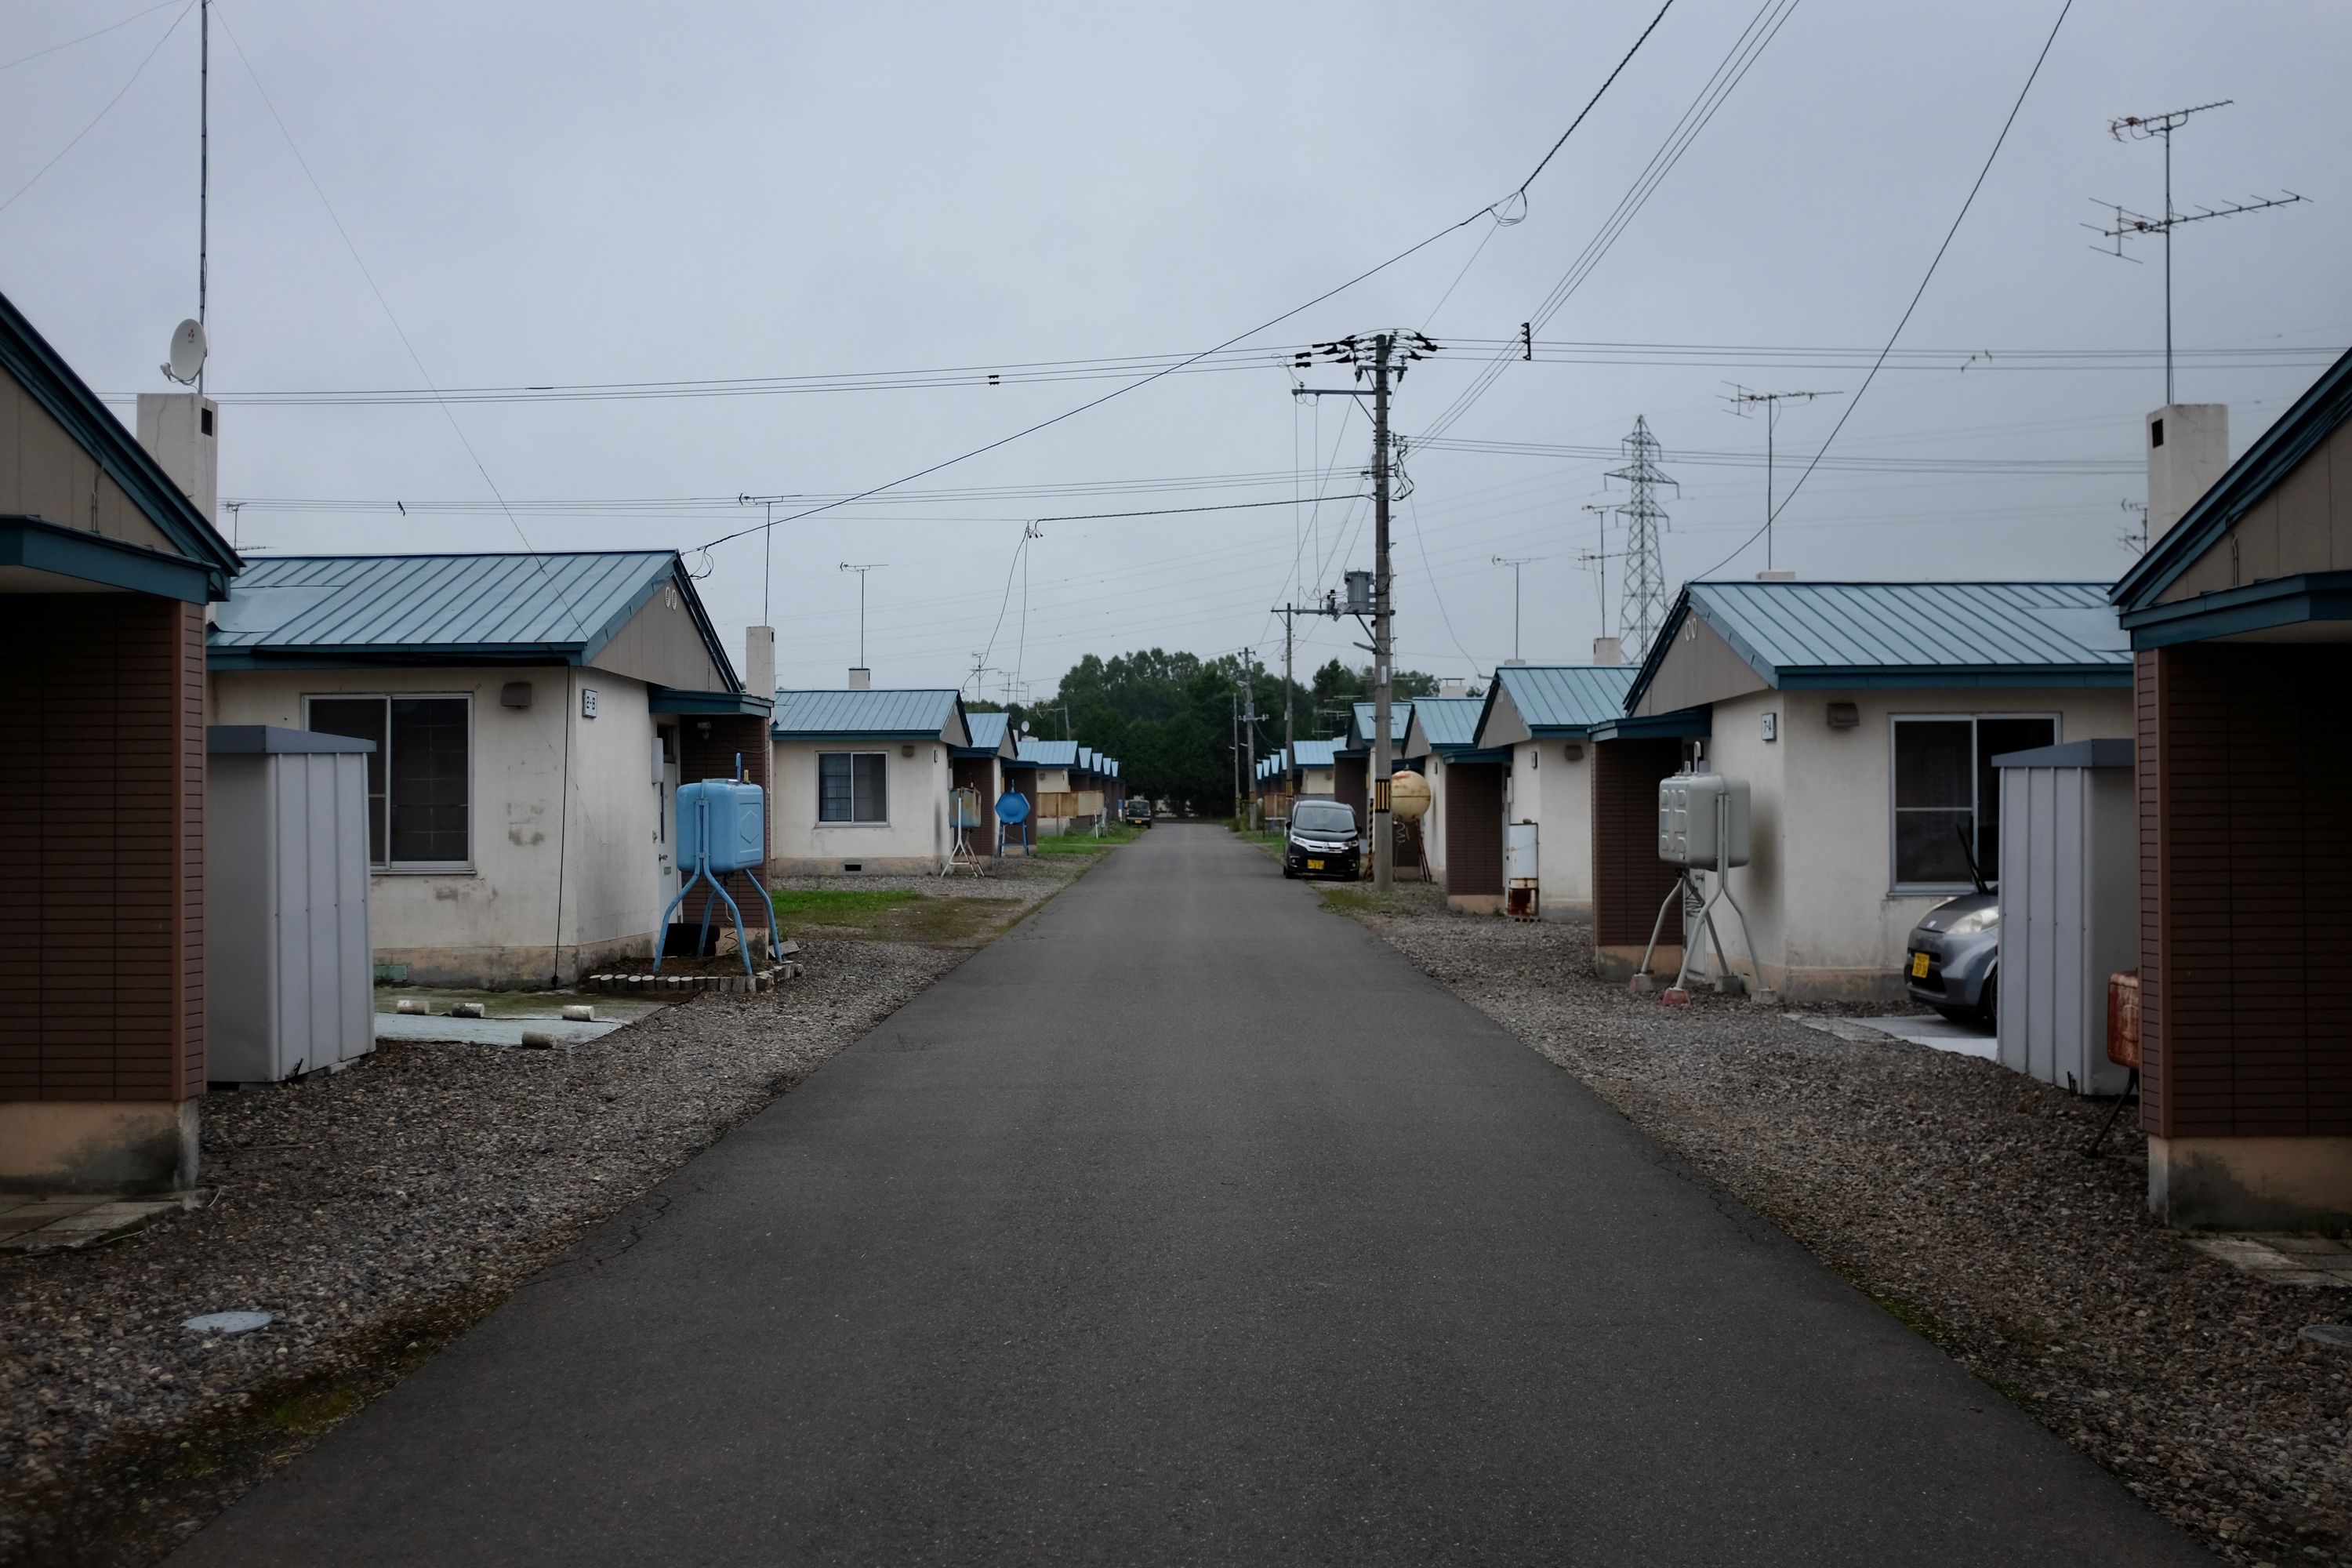 Gloomy-looking row houses on a bleak street.